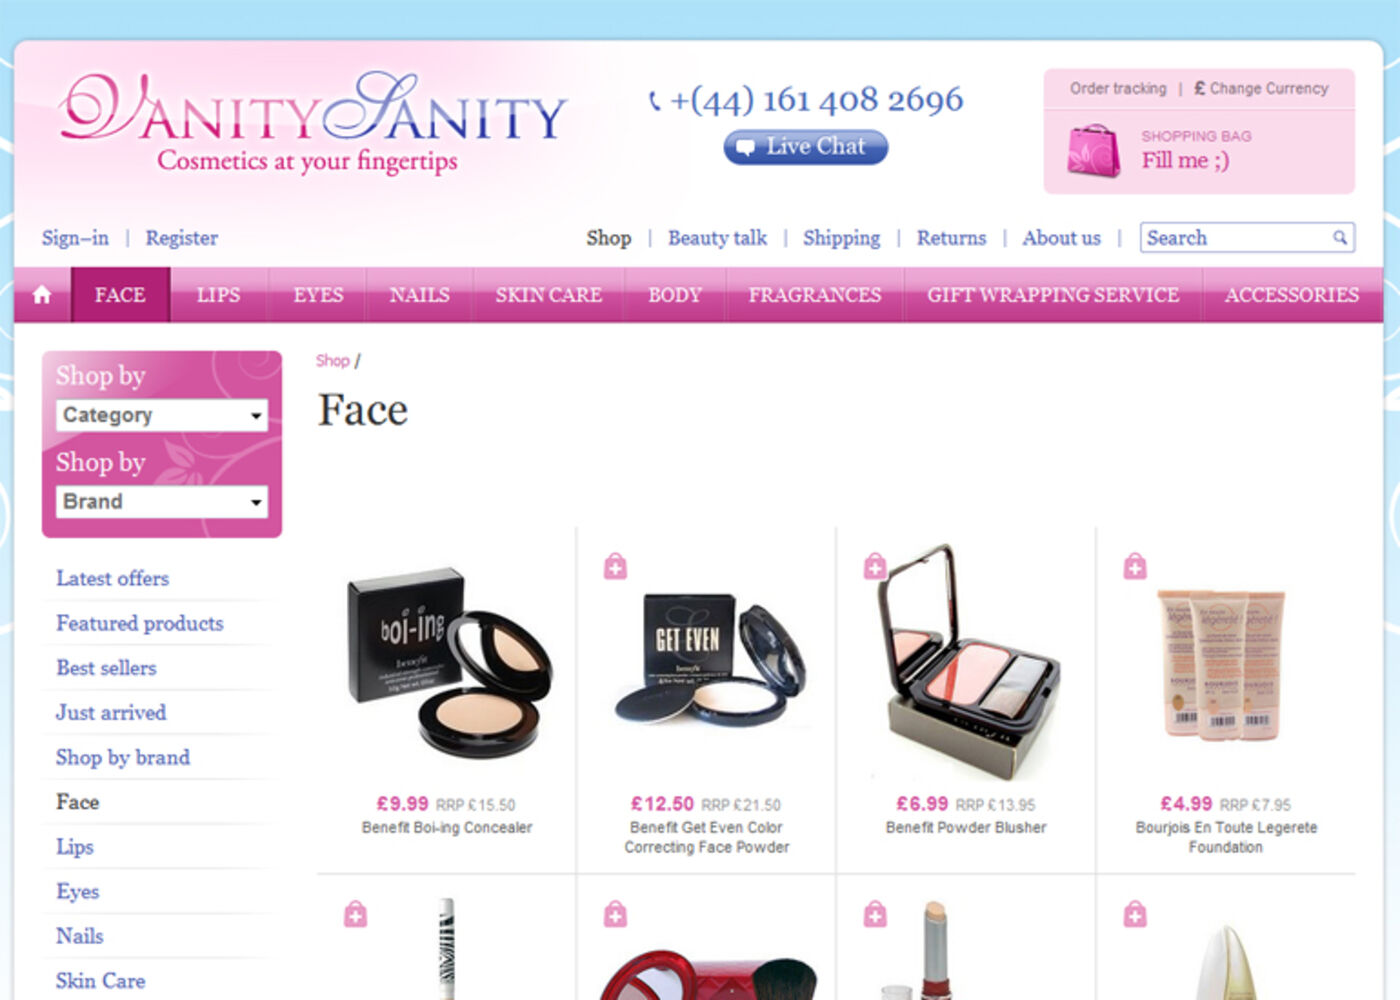 VanitySanity Products - VanitySanity